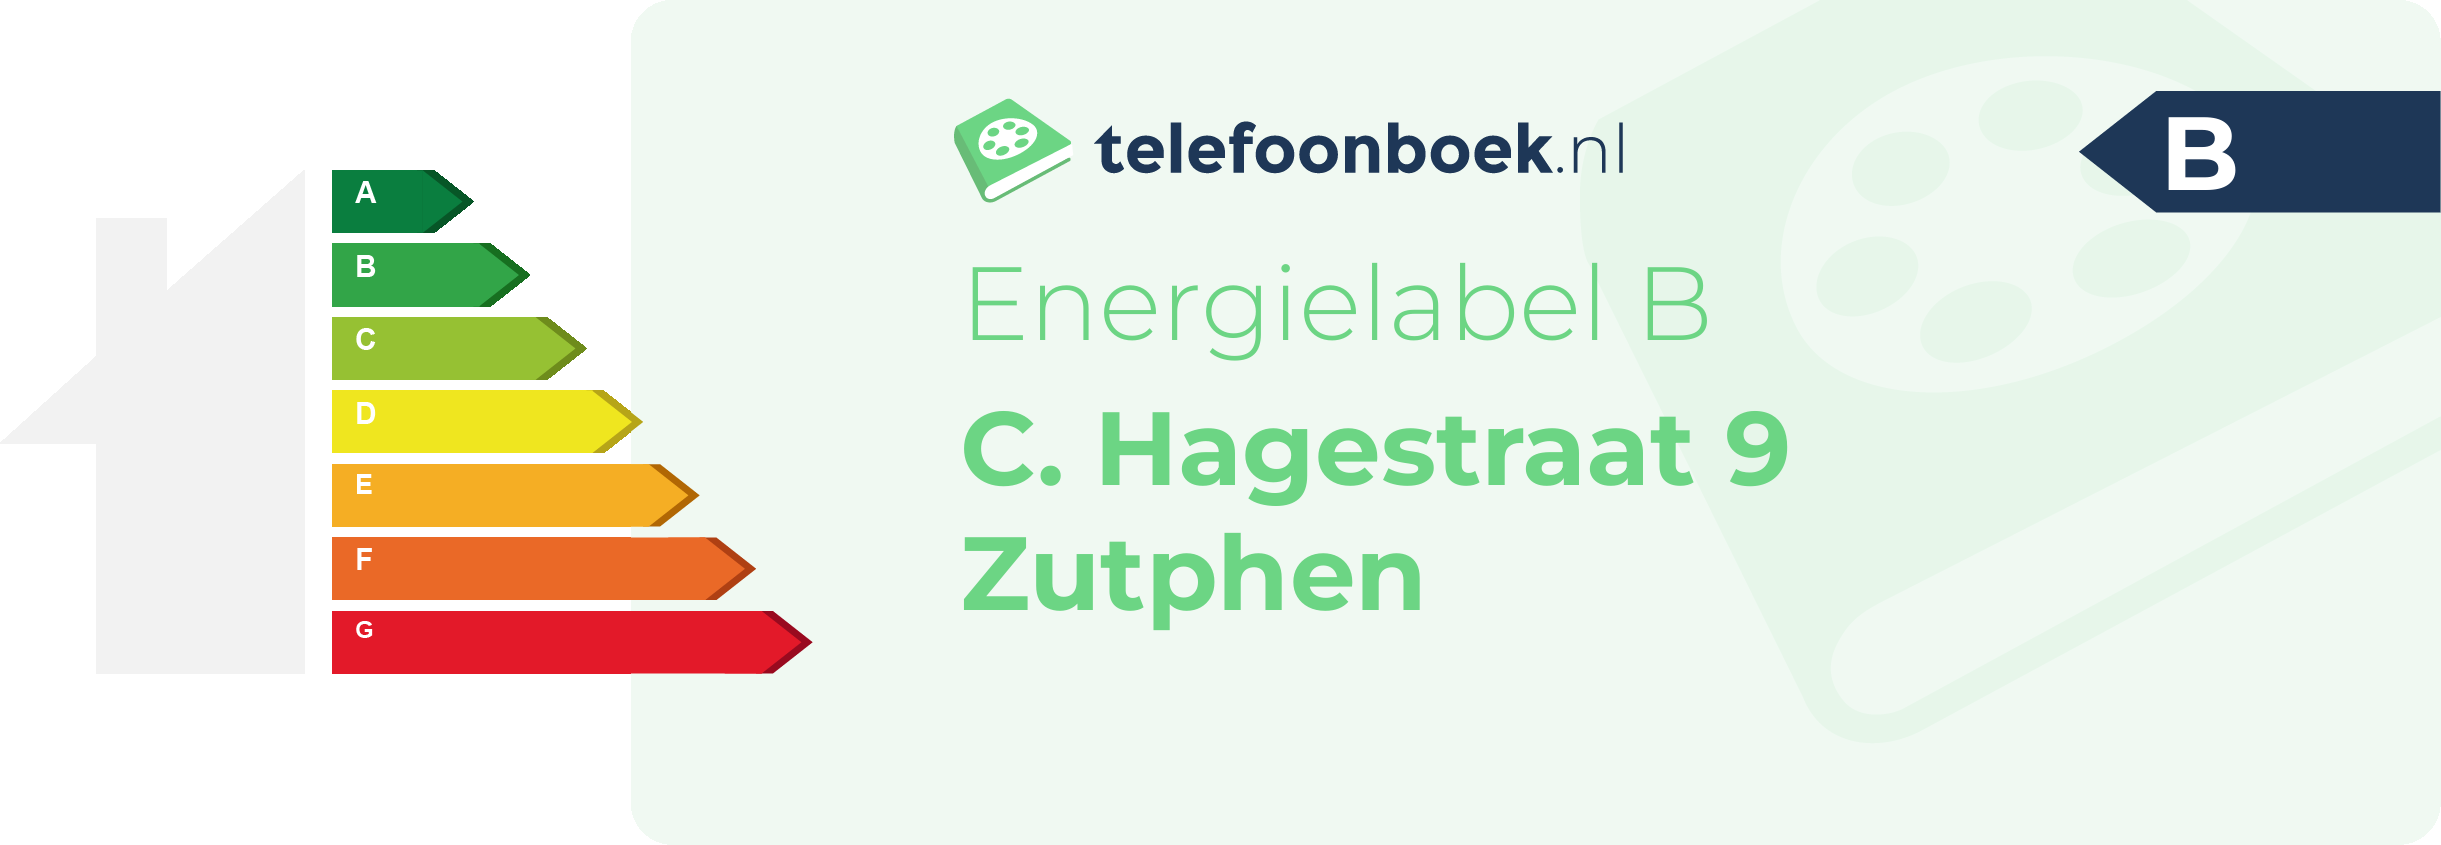 Energielabel C. Hagestraat 9 Zutphen